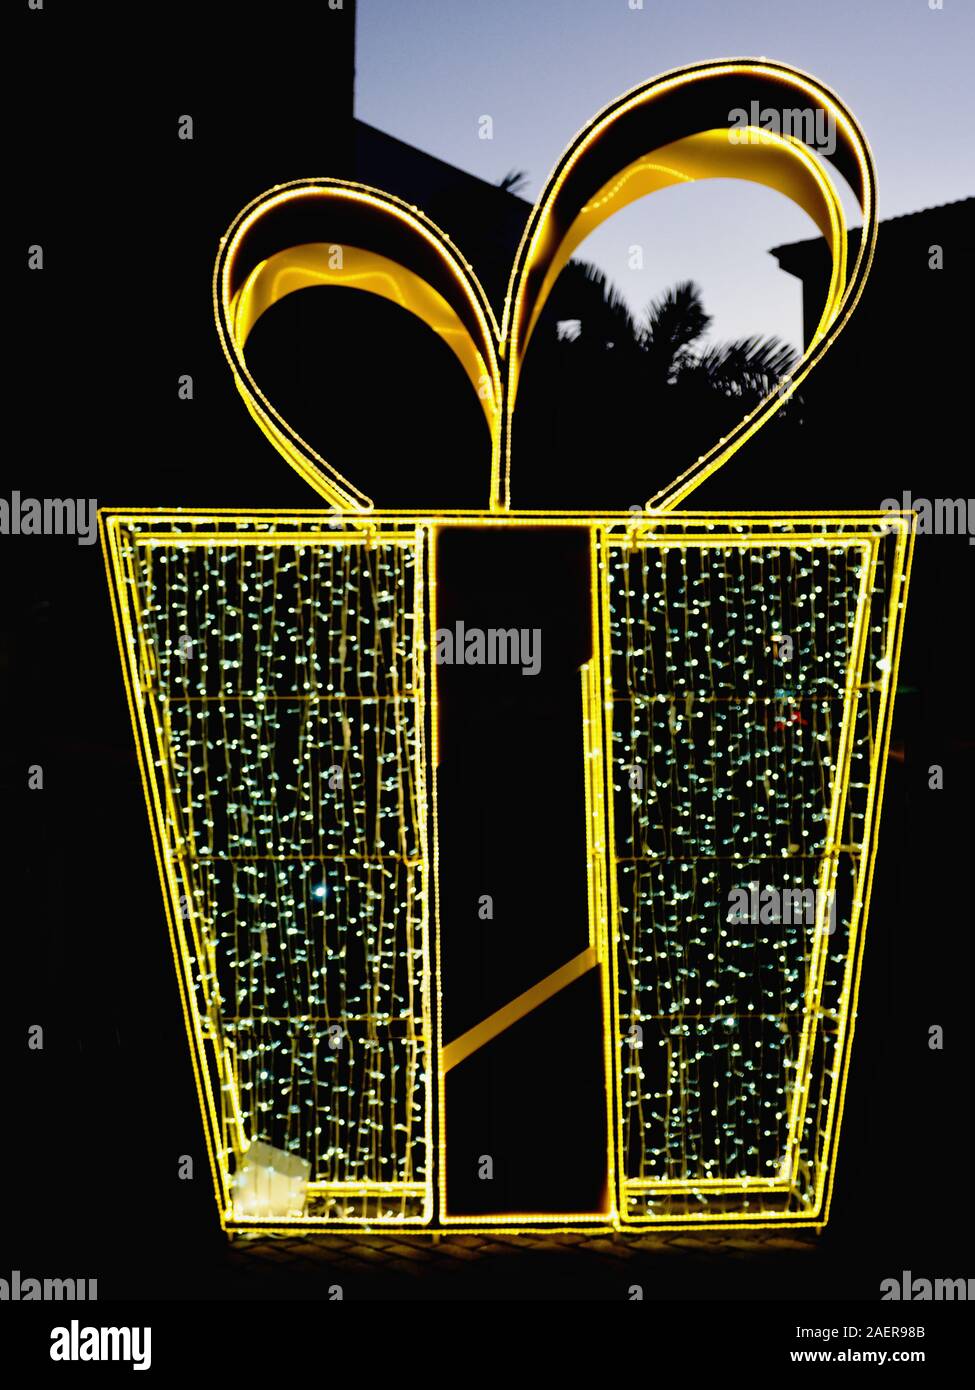 Una gran decoración de Navidad en una ciudad en la oscuridad, en la forma de una enorme caja de regalo en oro y las luces de hadas y una cinta ancha en la parte superior. Close-up i Foto de stock